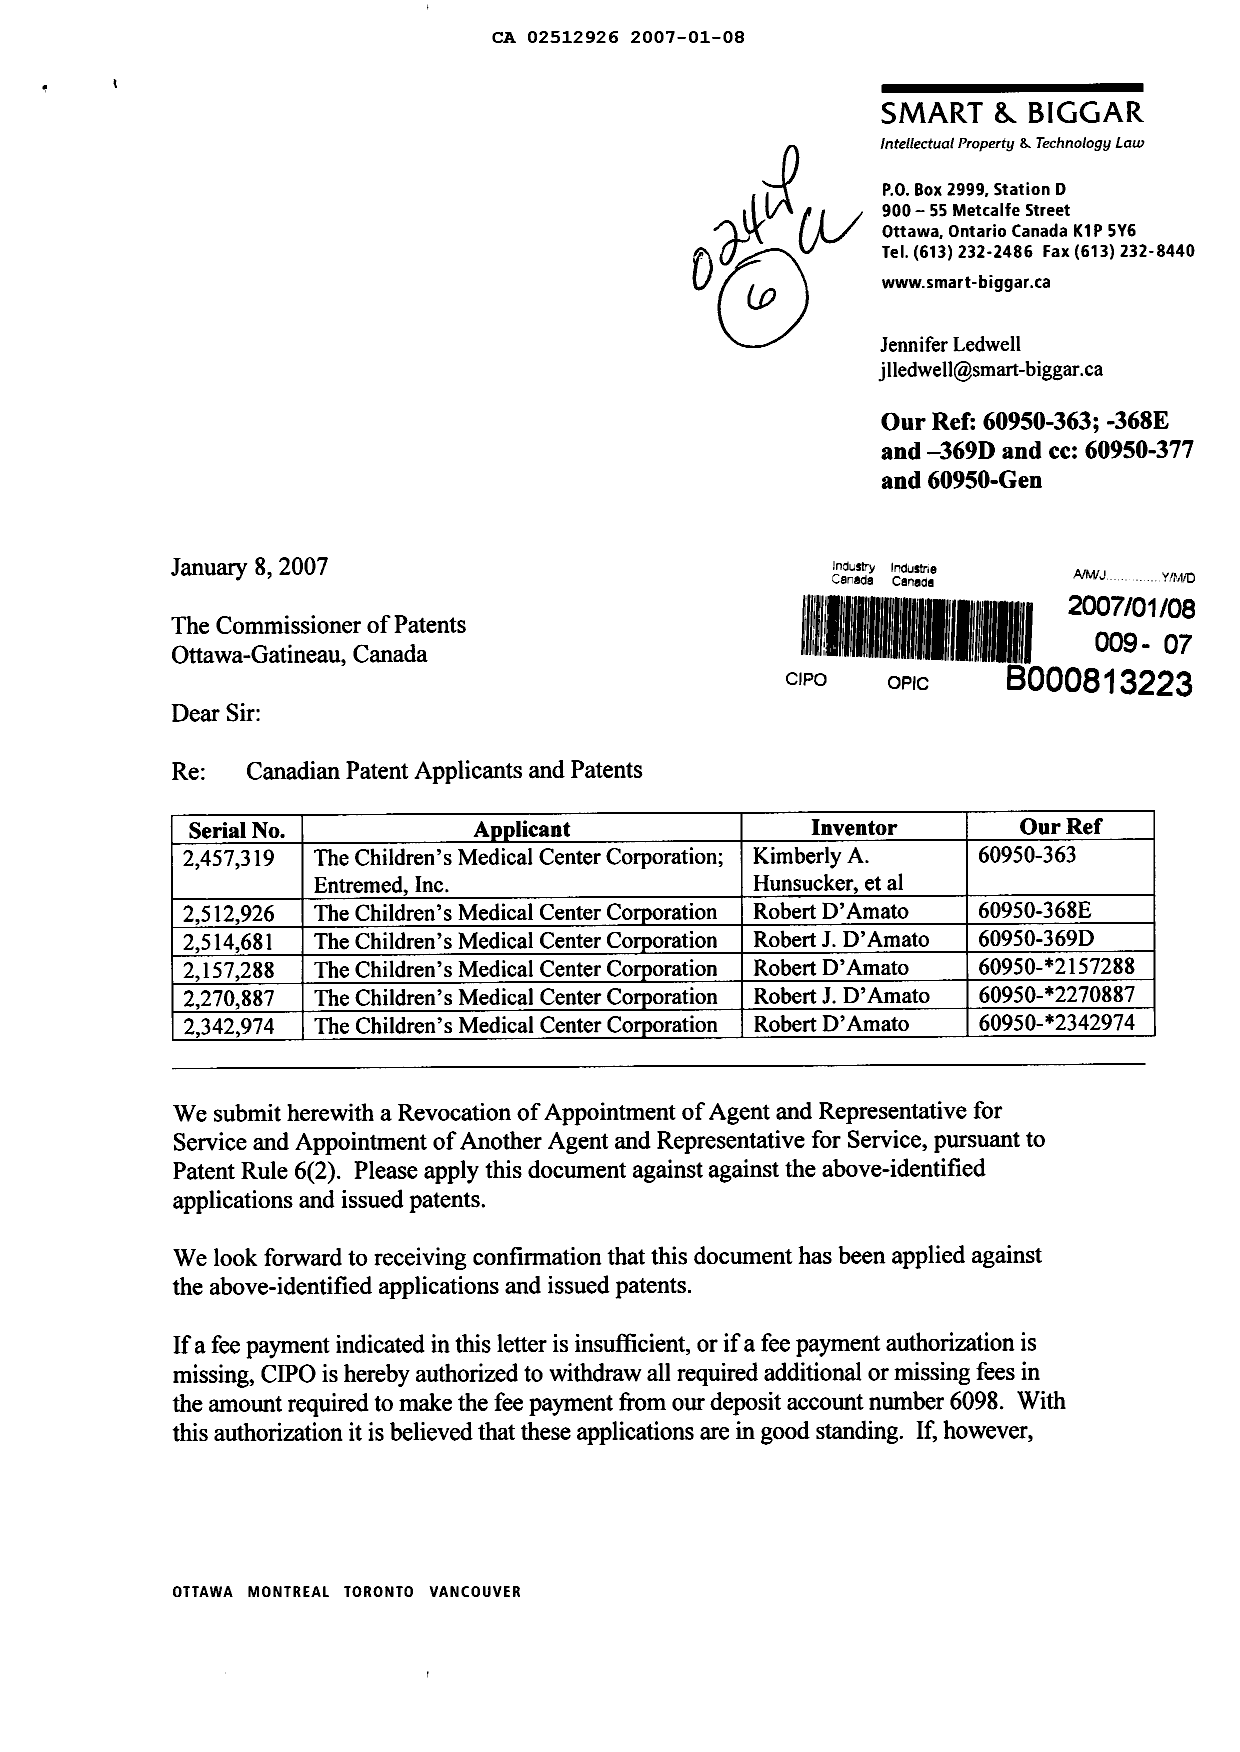 Document de brevet canadien 2157288. Correspondance 20070108. Image 1 de 4